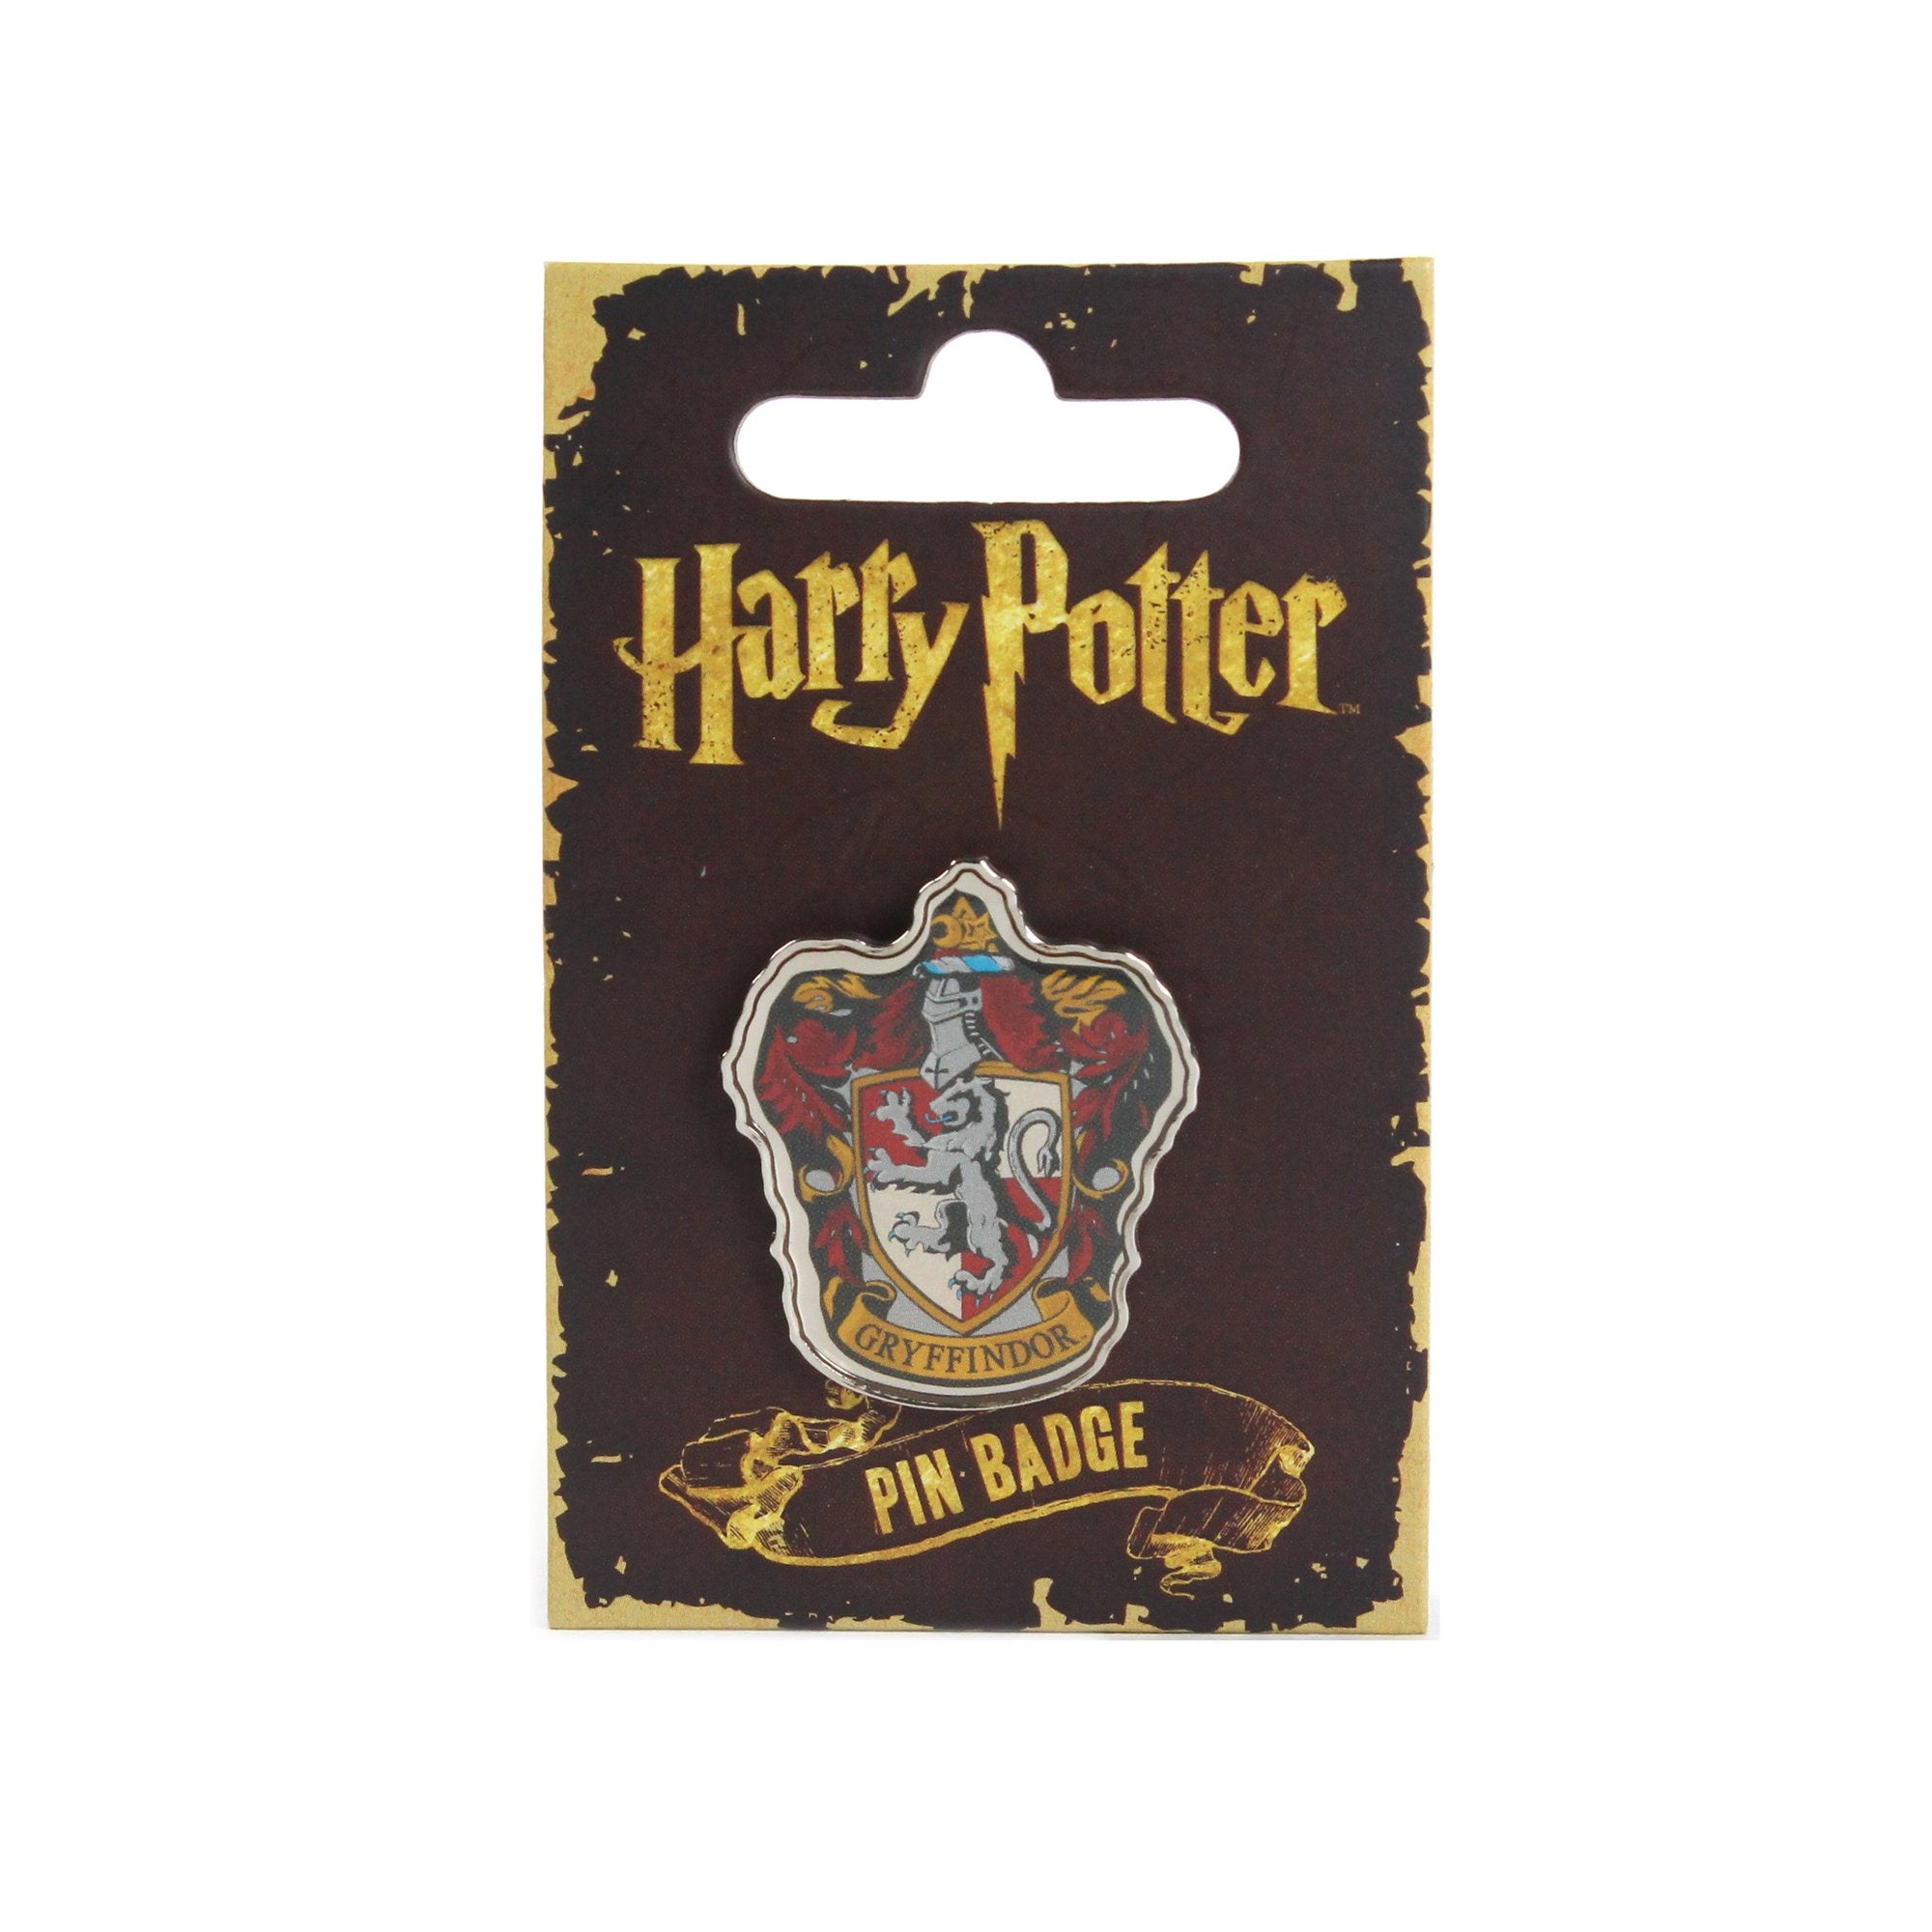 Harry Potter Pin Badge - Gryffindor Crest